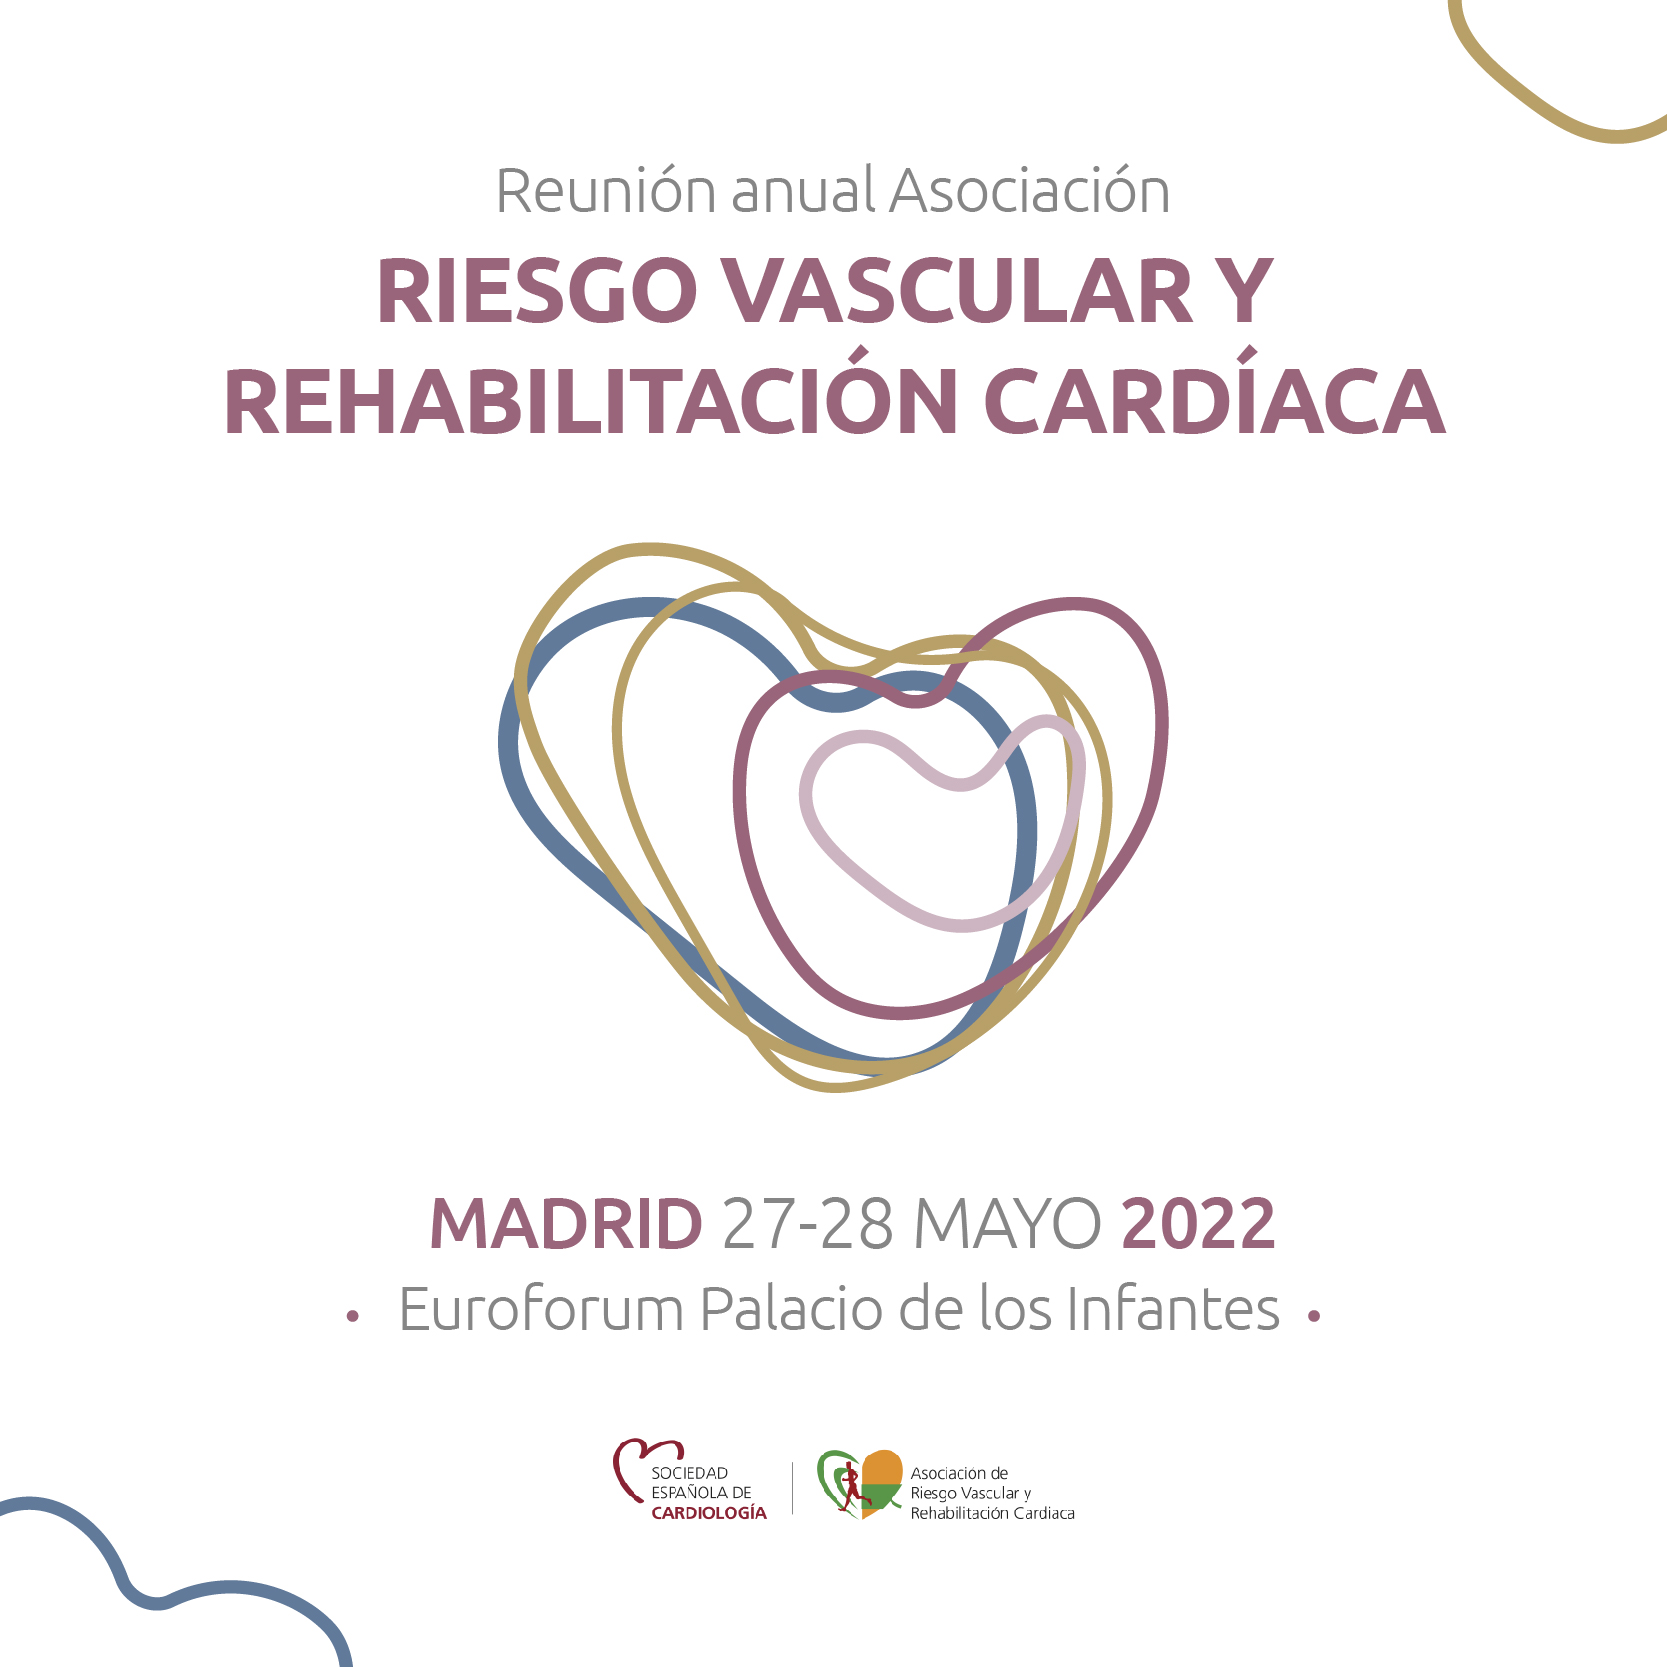 Reunión Anual de la Asociación de Riesgo Vascular y Rehabilitación Cardiaca